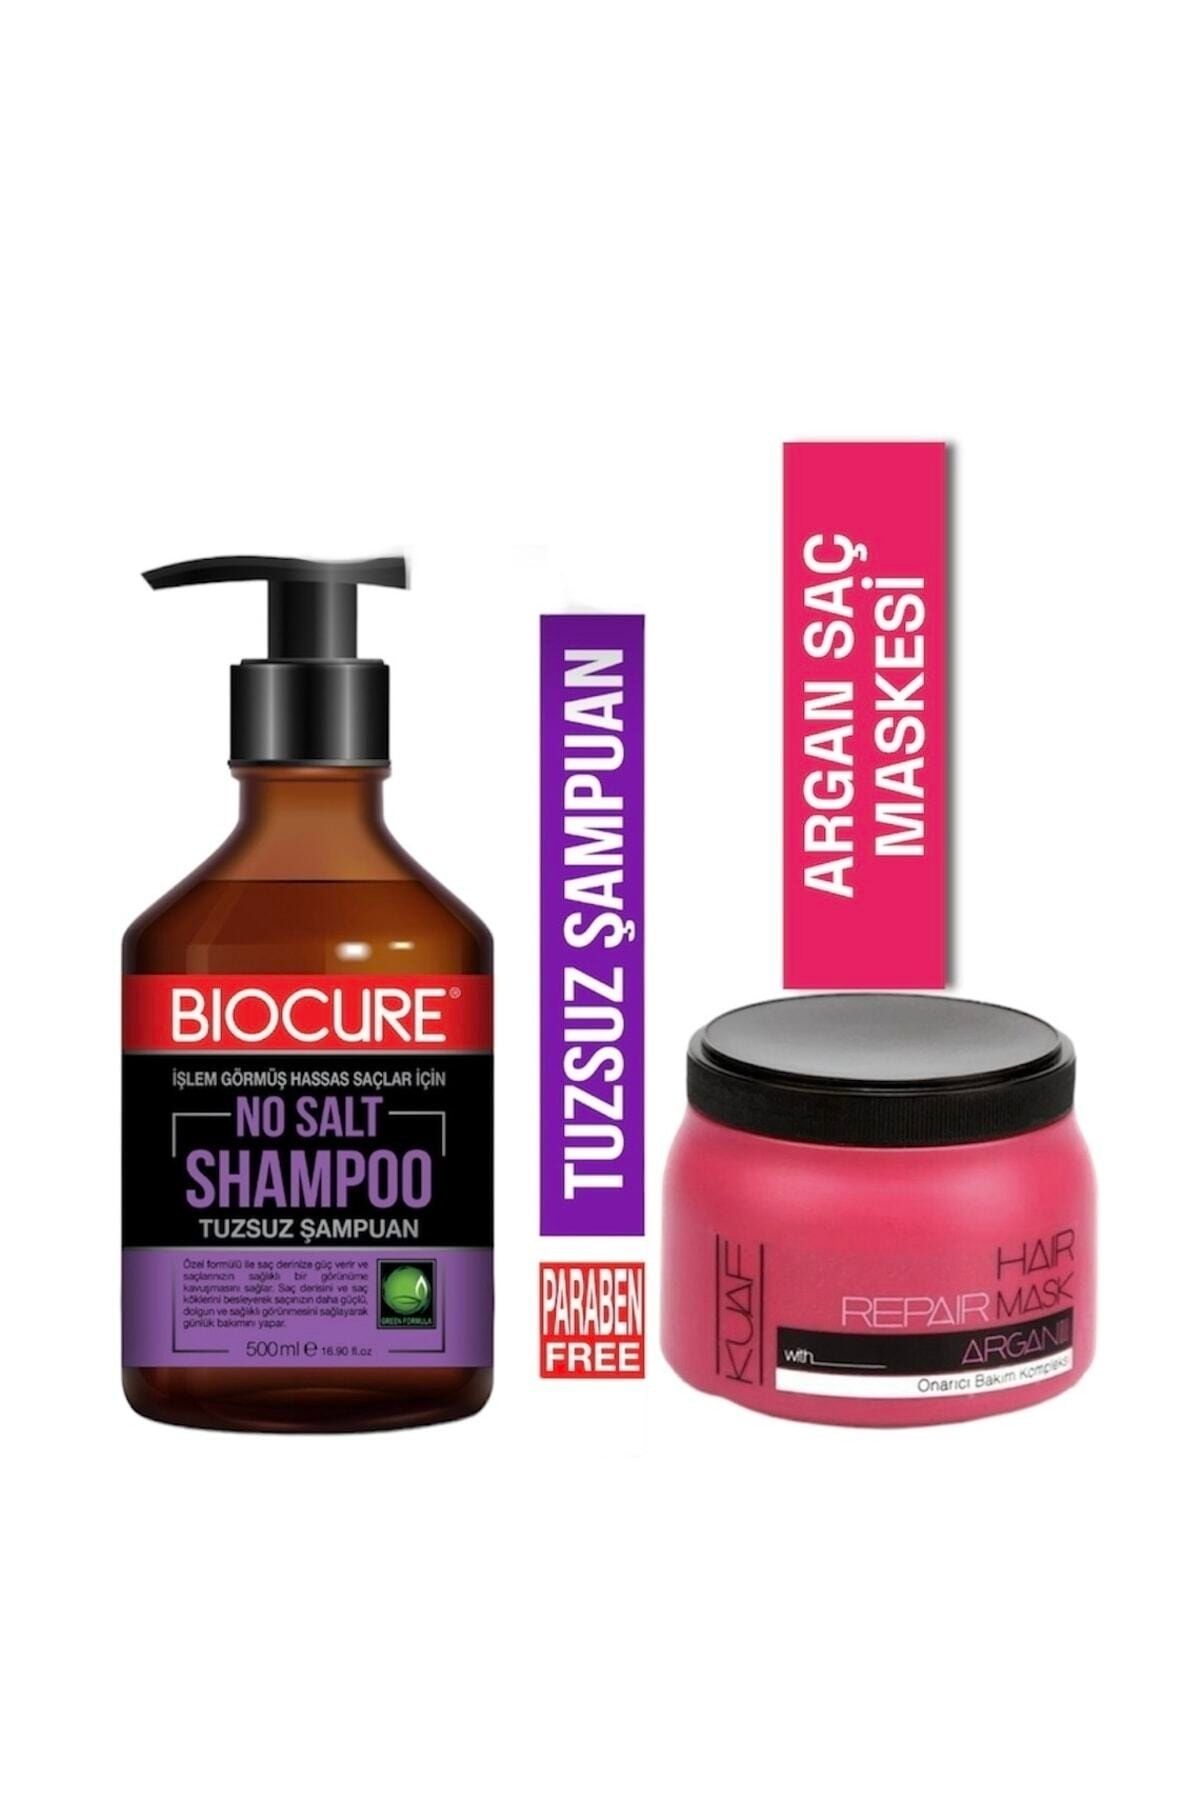 Biocure Tuzsuz Arındırıcı Saç Bakım Şampuanı 500ml Argan Saç Maskesi